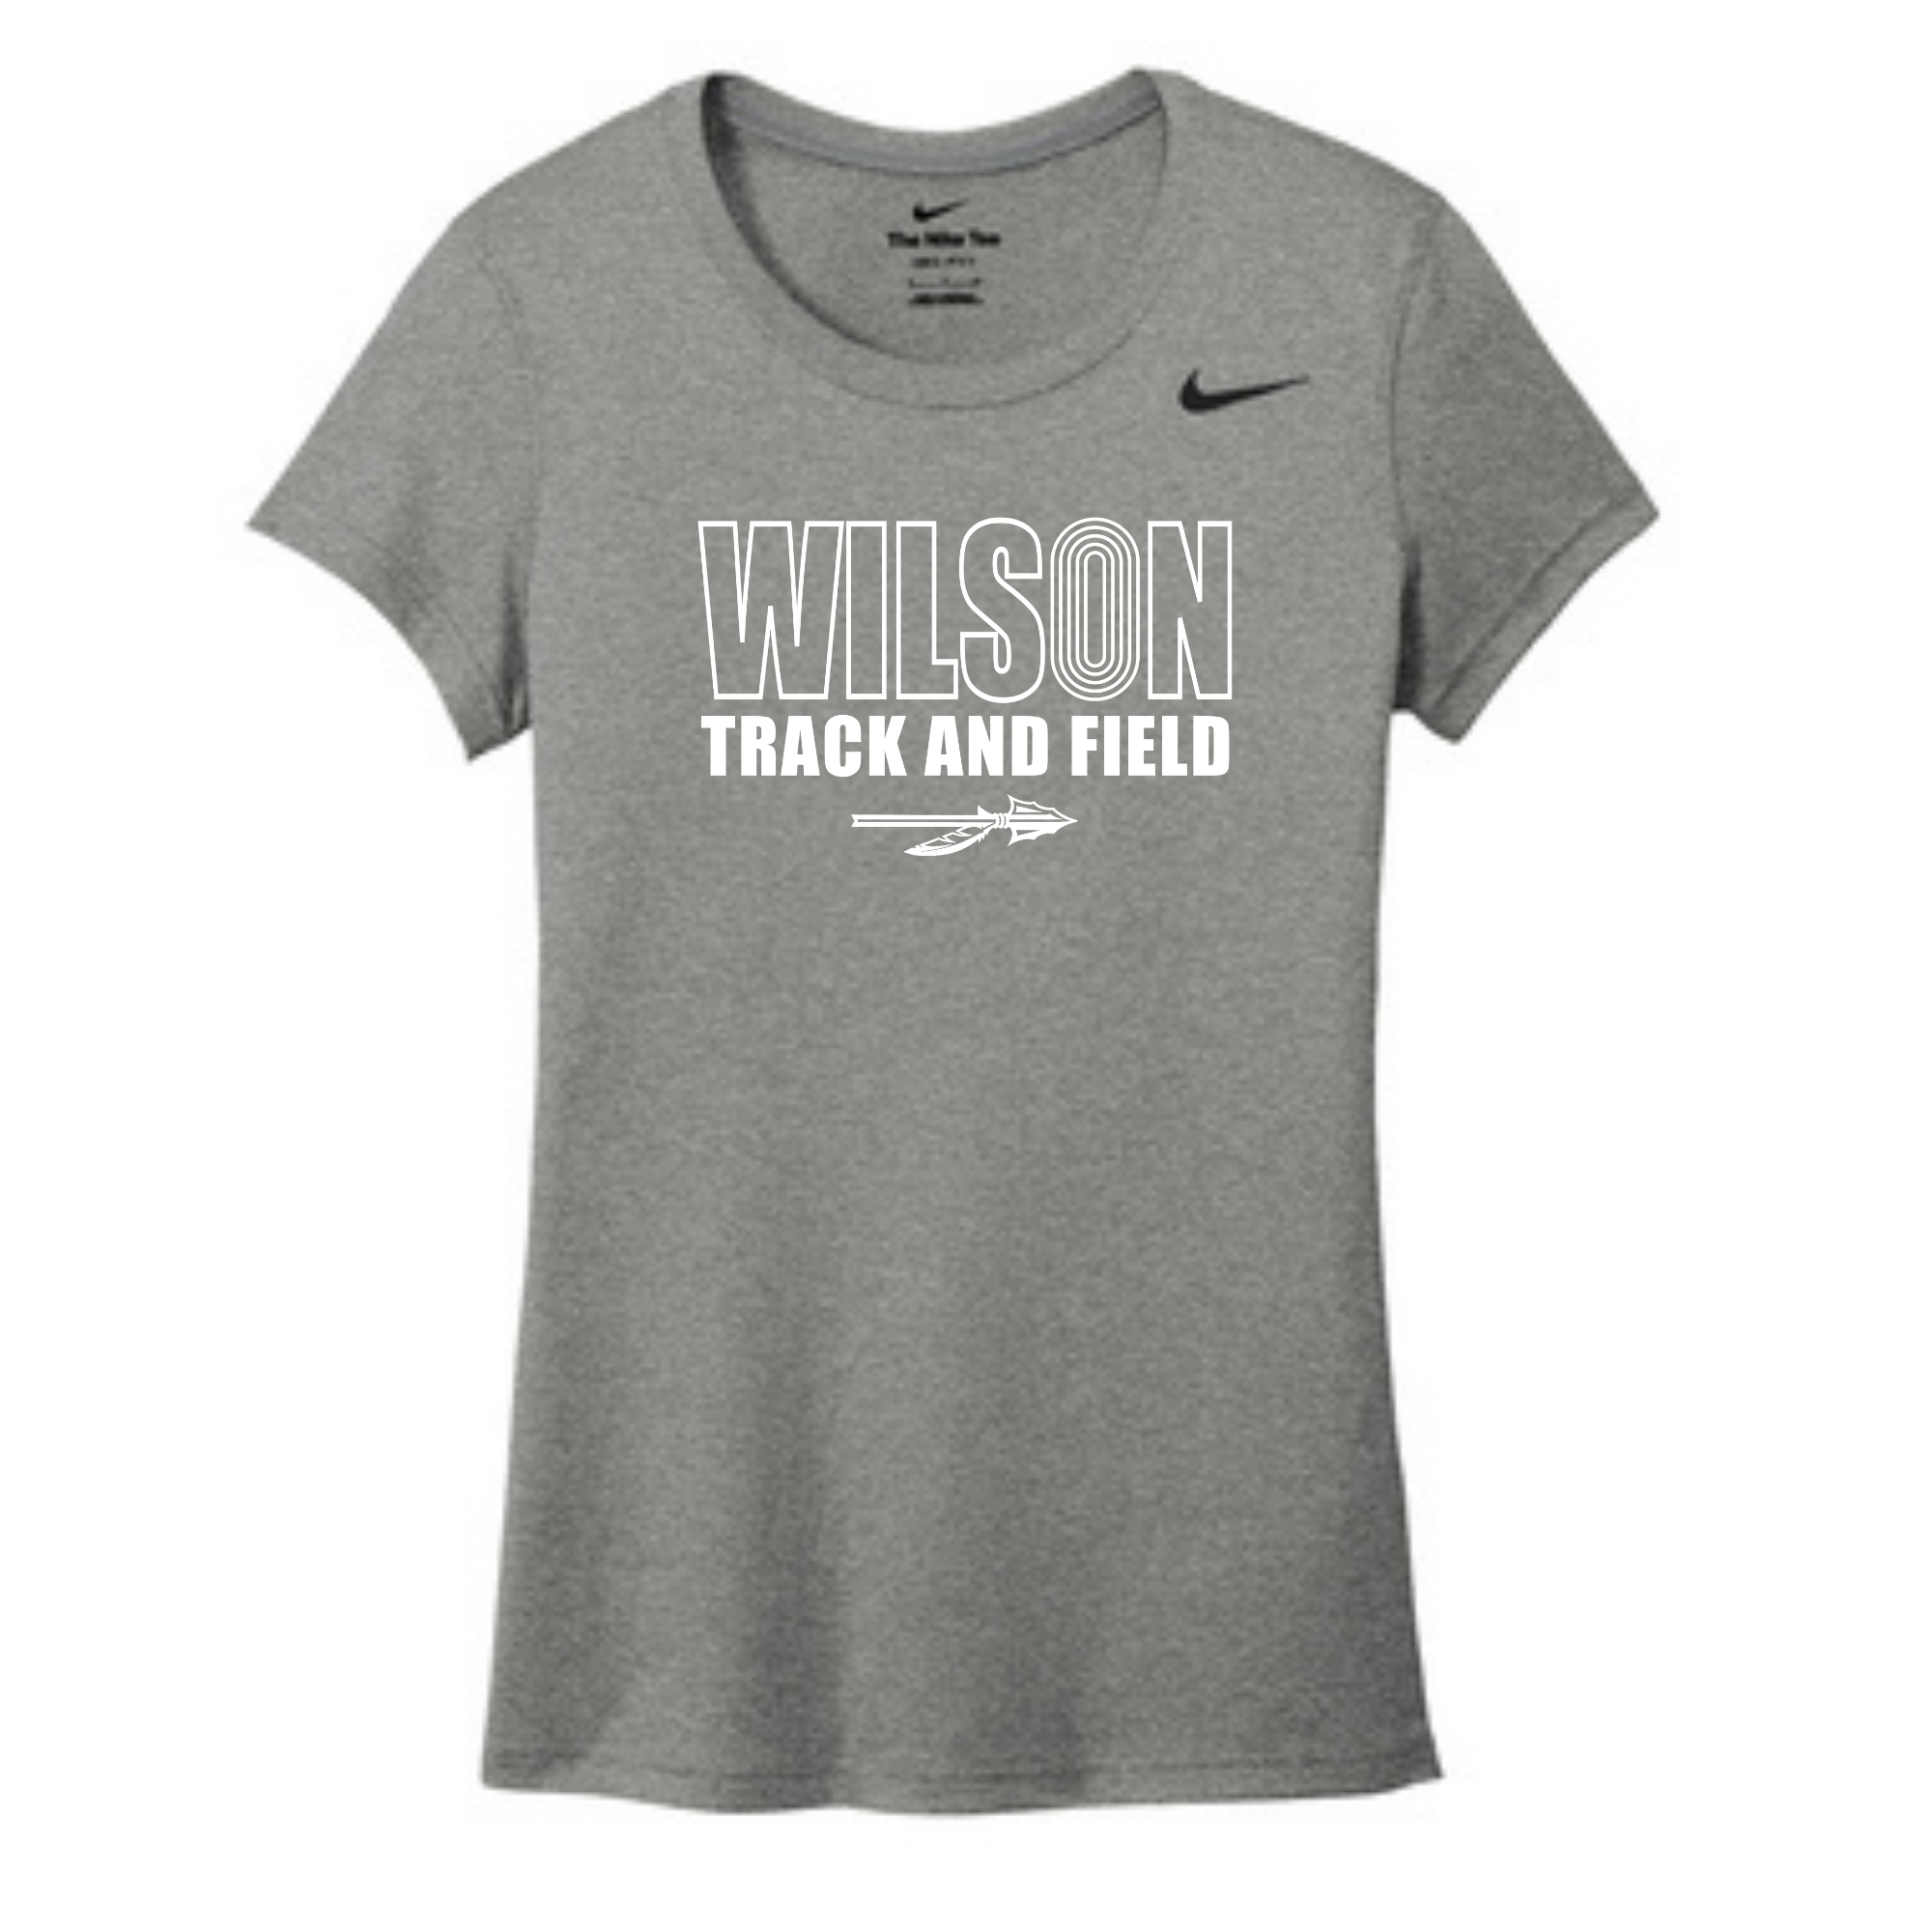 Wilson Track and Field Nike Ladies Tee- DV7312